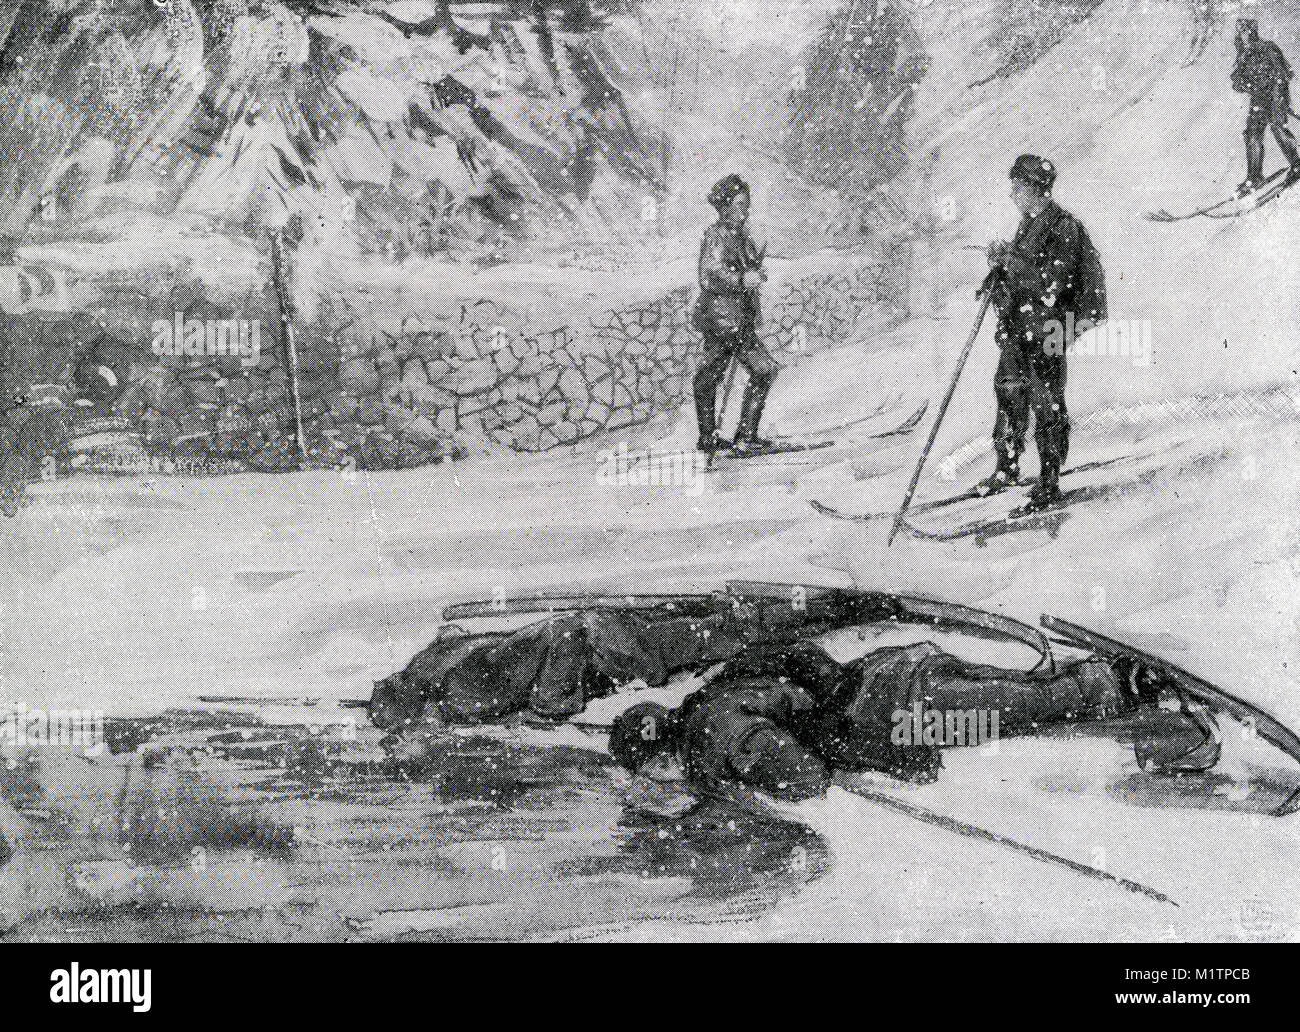 Illustrazione dei mezzitoni di 'Ski-runner' acqua potabile o "goose vino" da un pool di scongelare in Norvegia, circa 1900. Da una immagine originale in modo altre persone vivono da H. Clive Barnard, 1918. Foto Stock